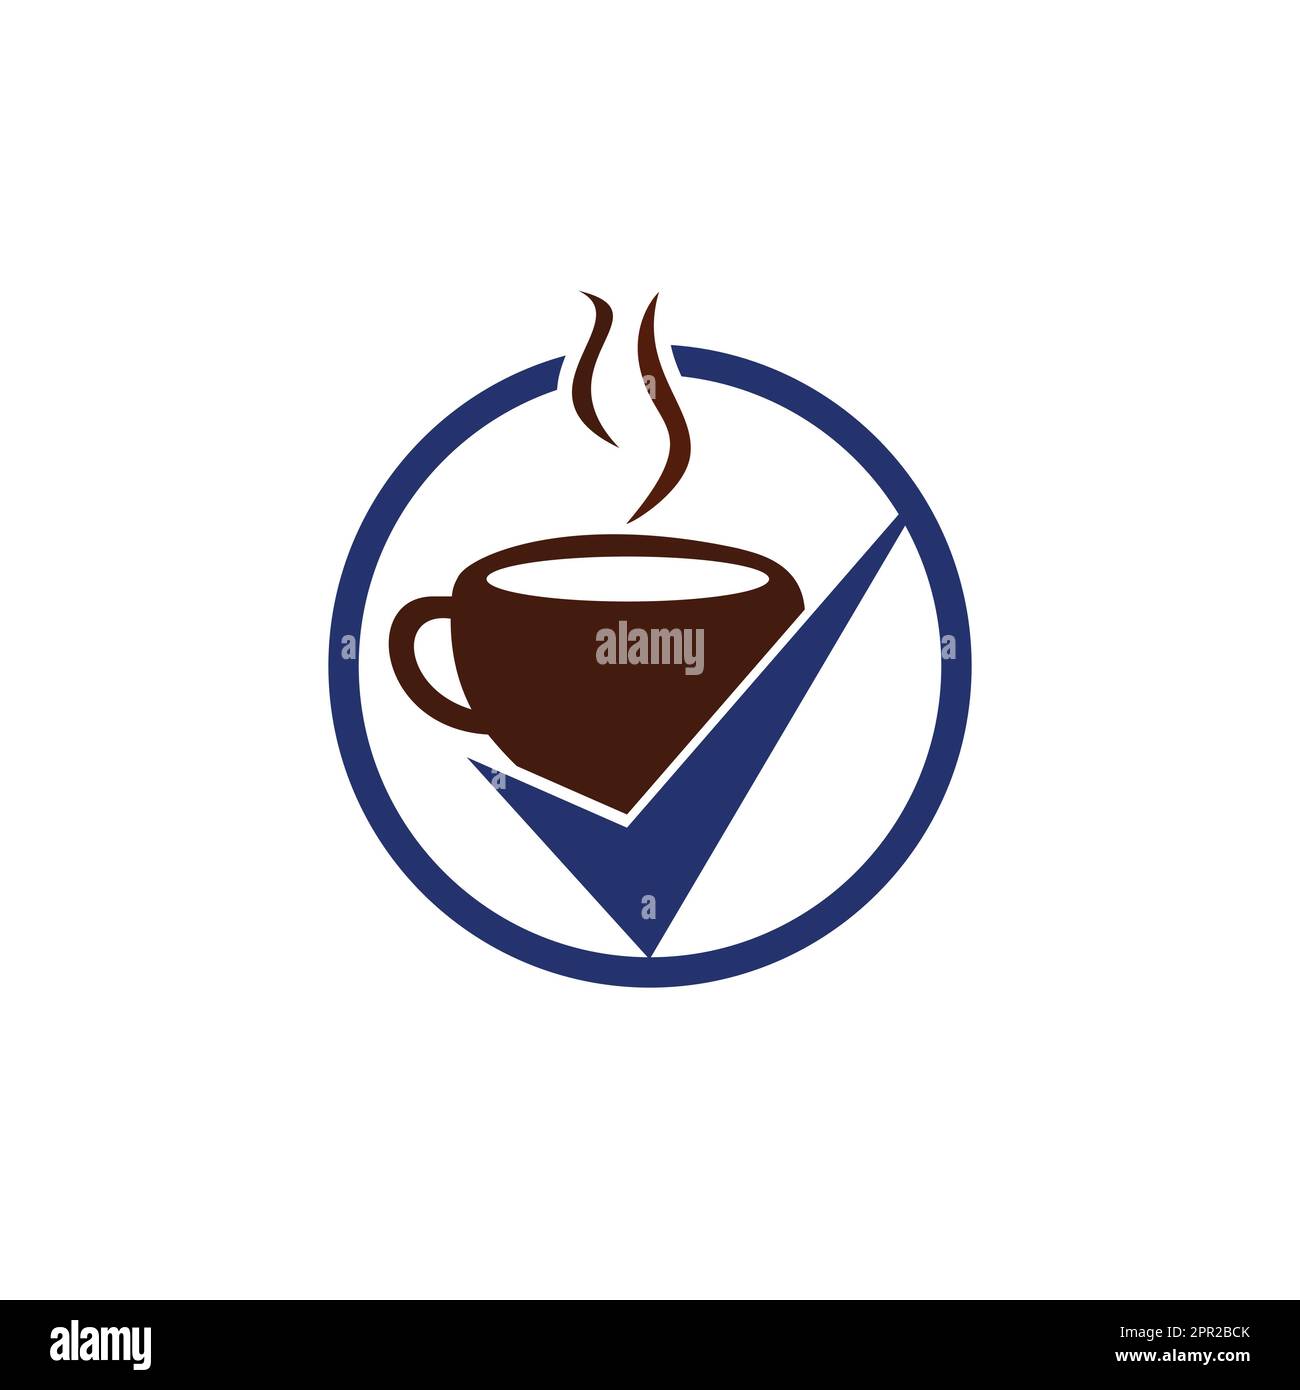 Disegno del logo Vector Coffee Check. Tazza da caffè con un segno di spunta. Illustrazione Vettoriale